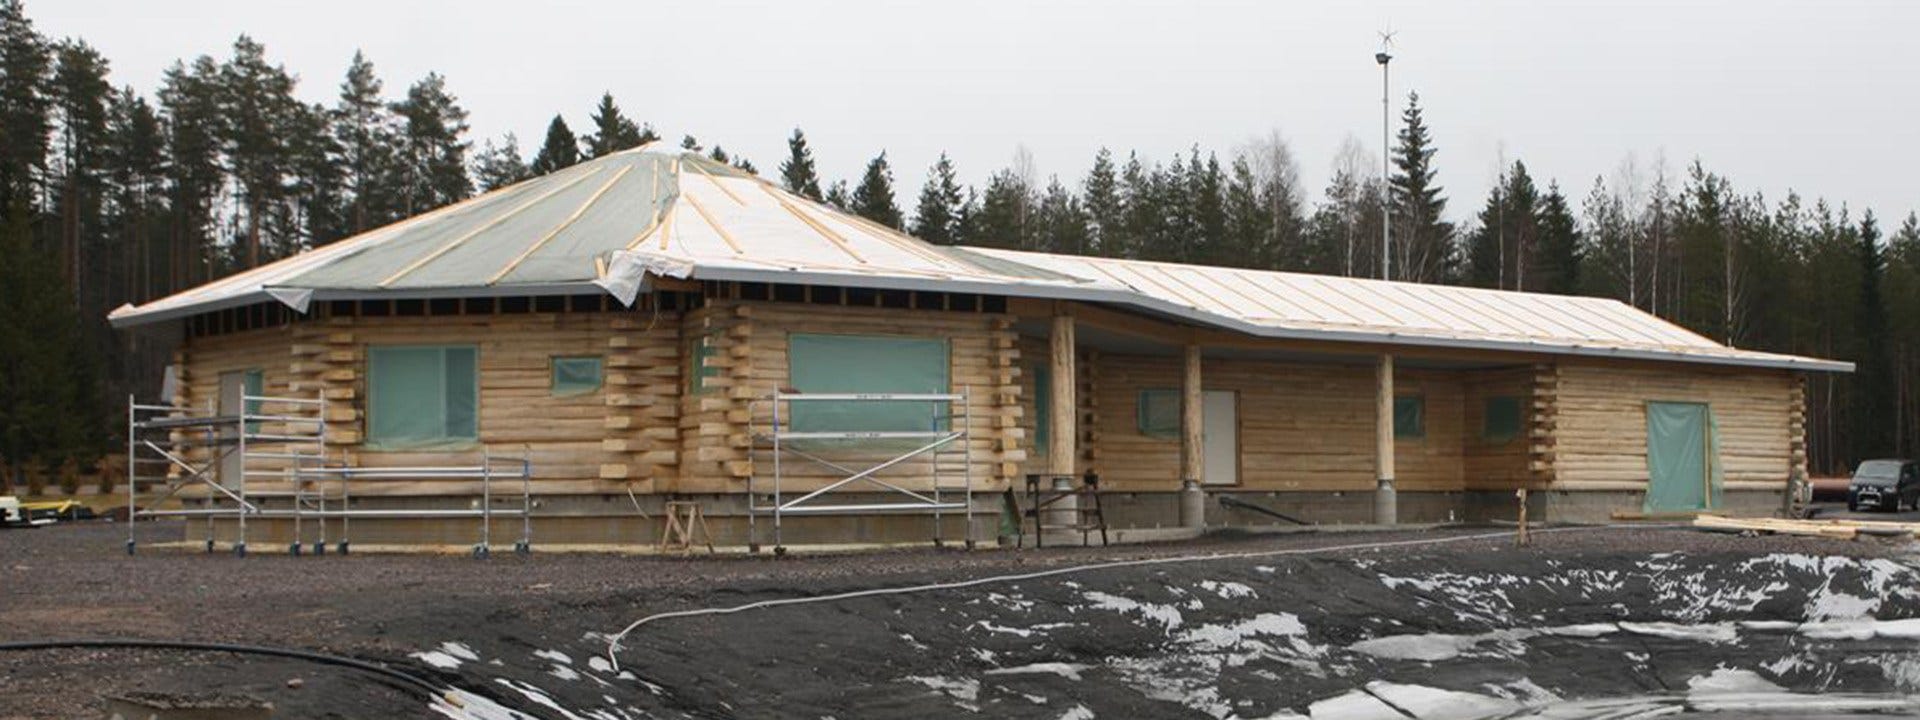 Byggde ett åttkantigt hus i aspvirke i Finland